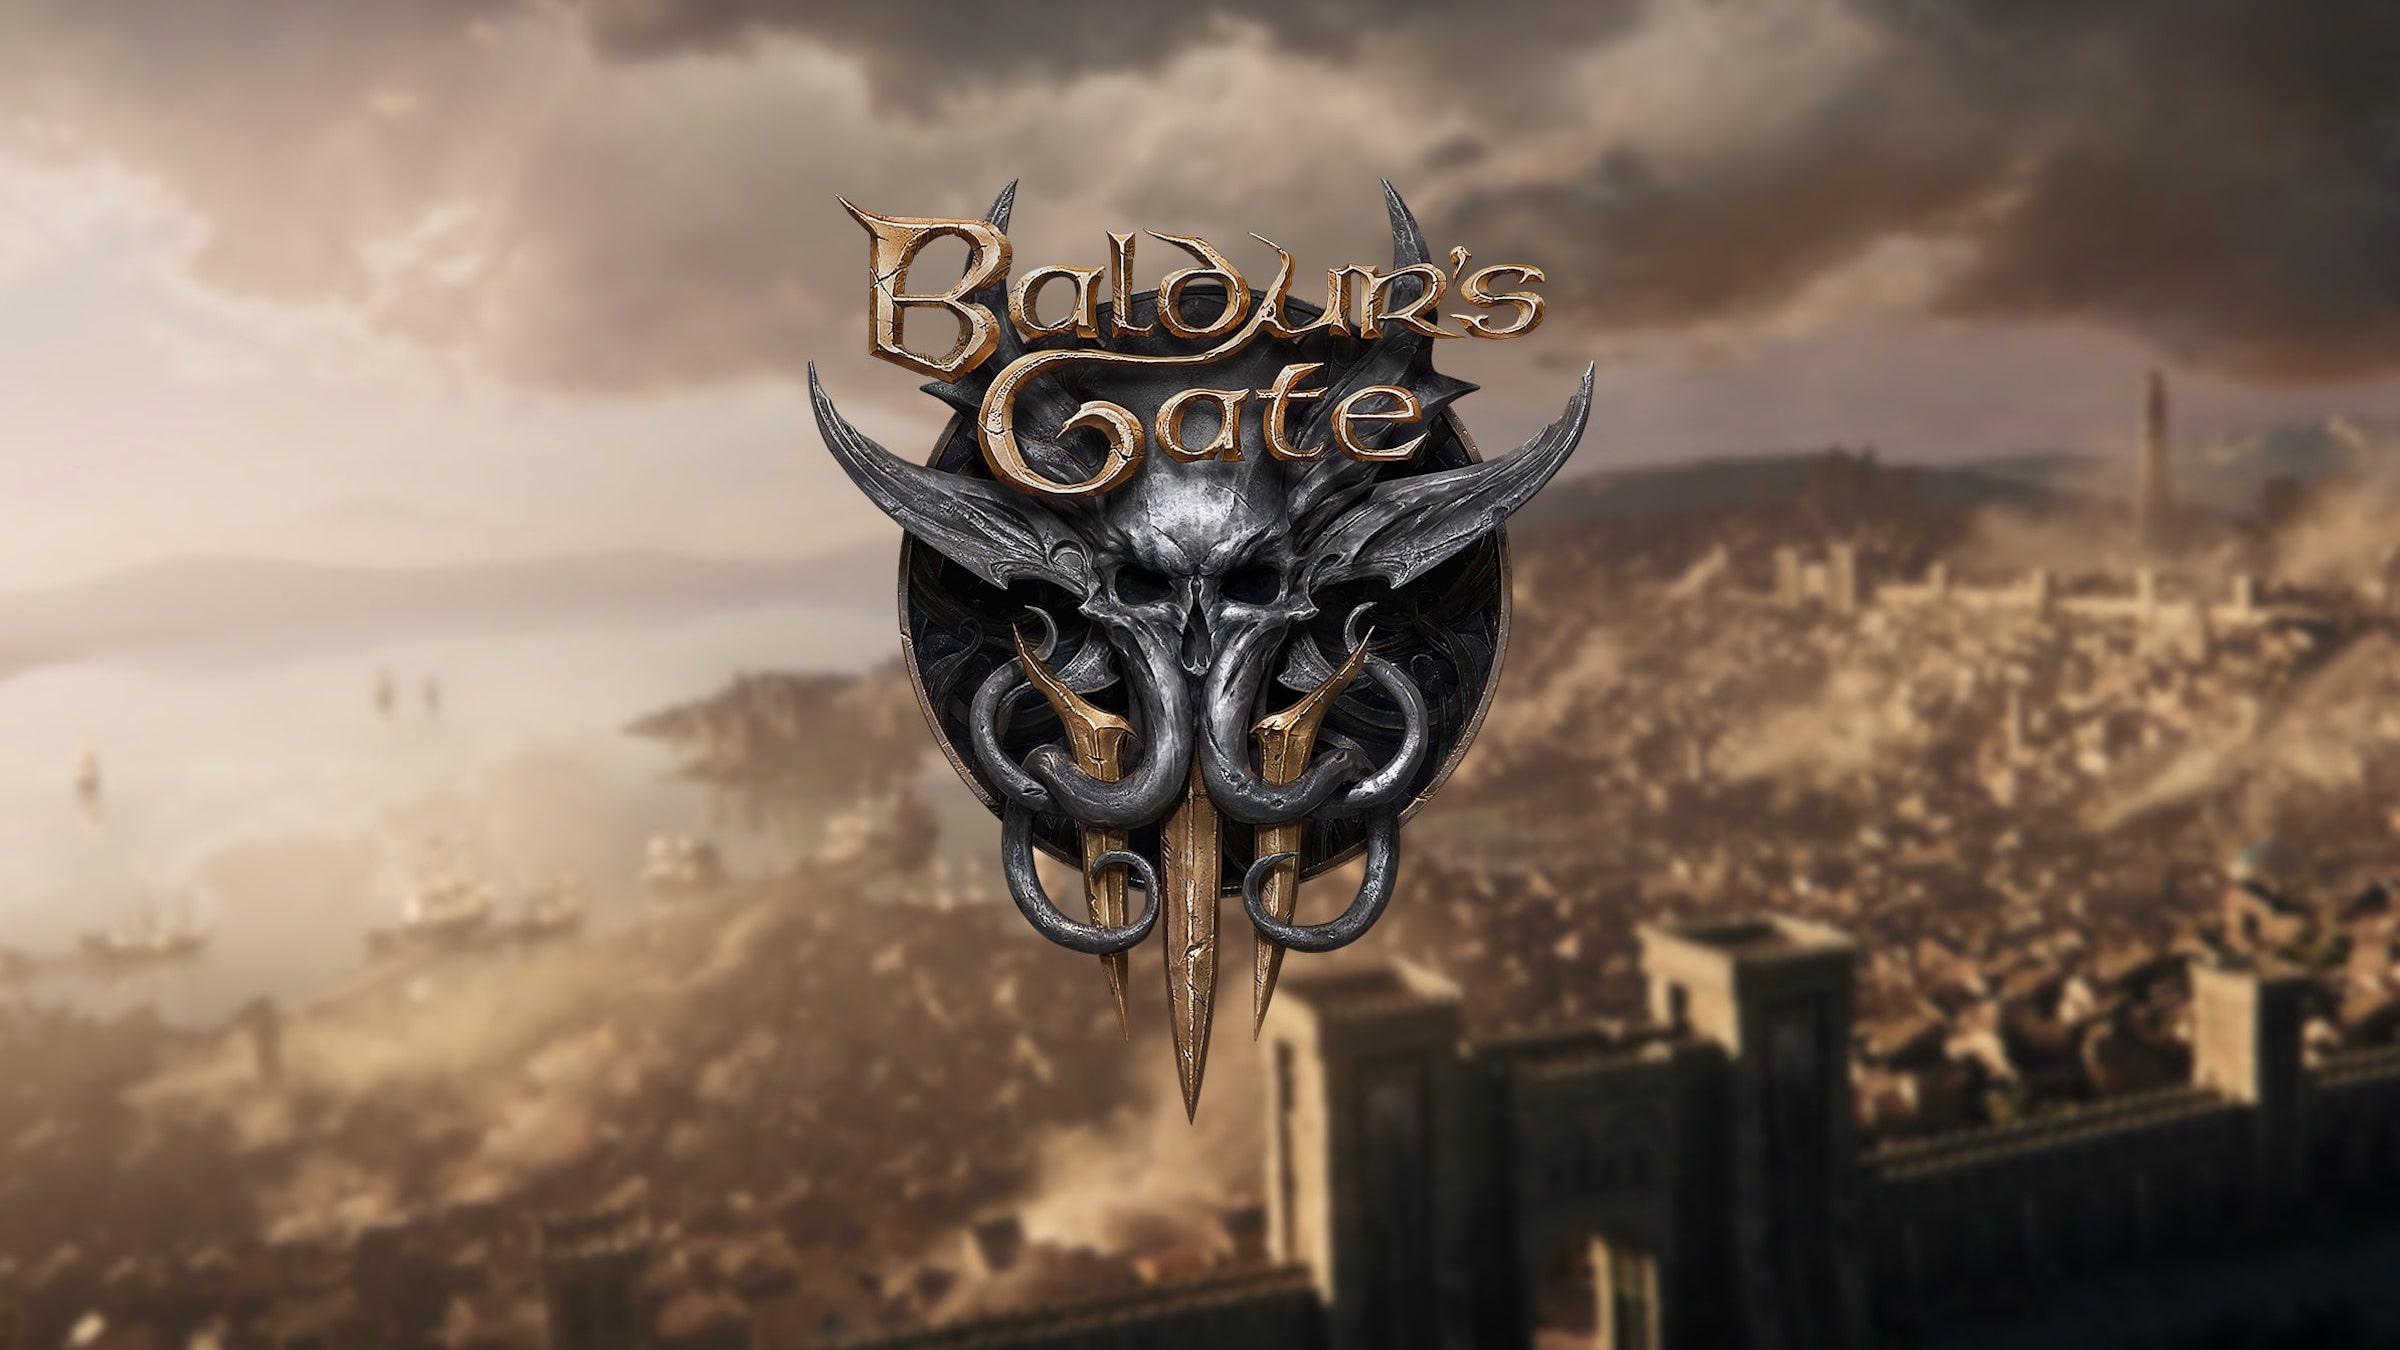 baldurs gate 3 multiplayer